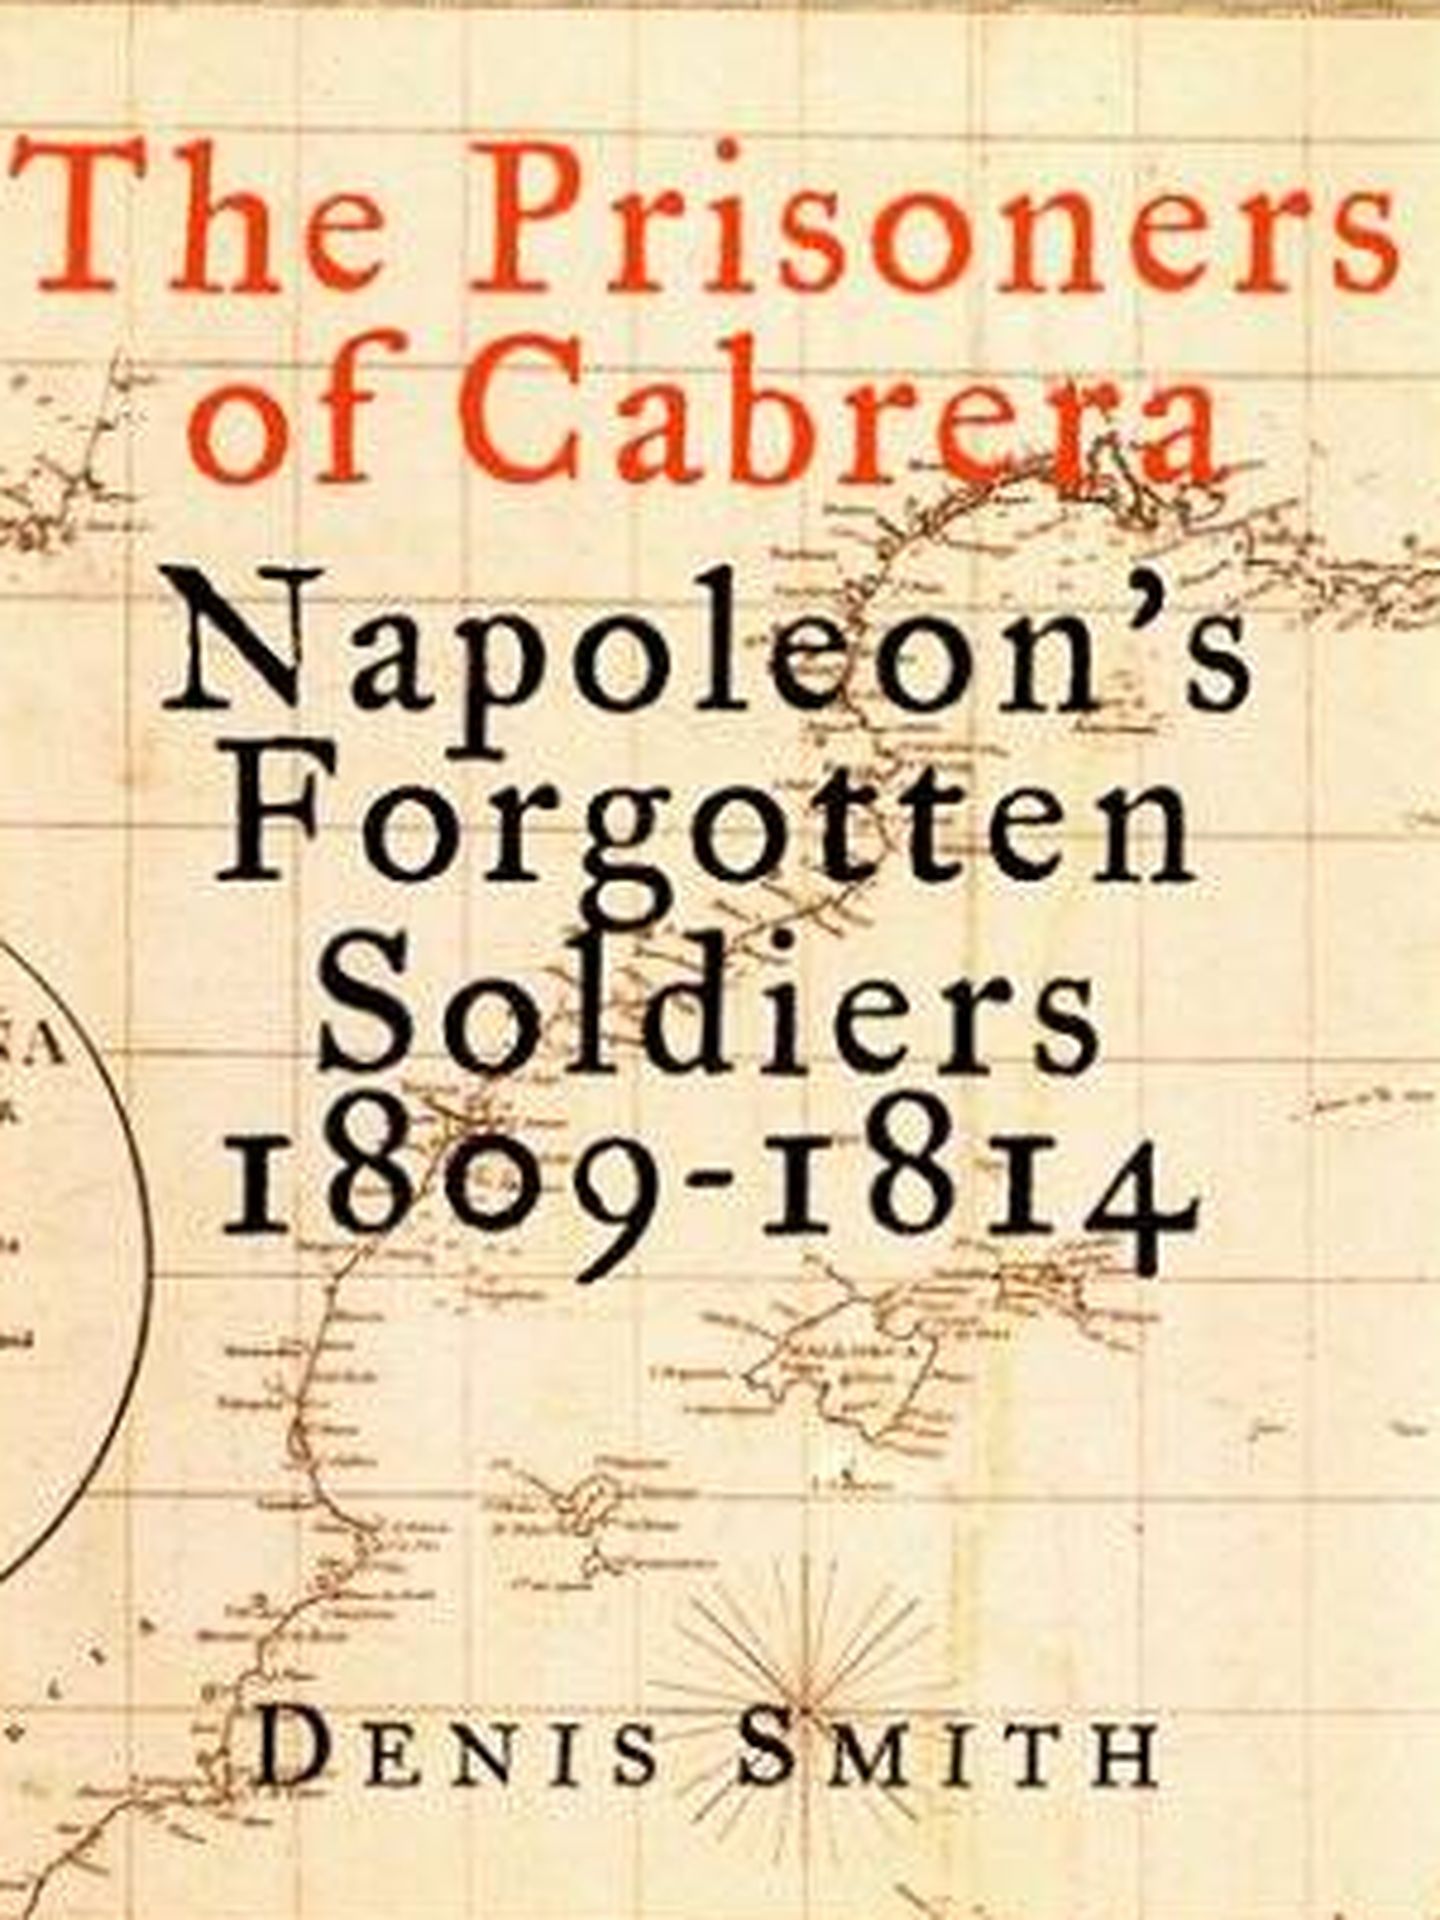 'The prisioners of Cabrera'